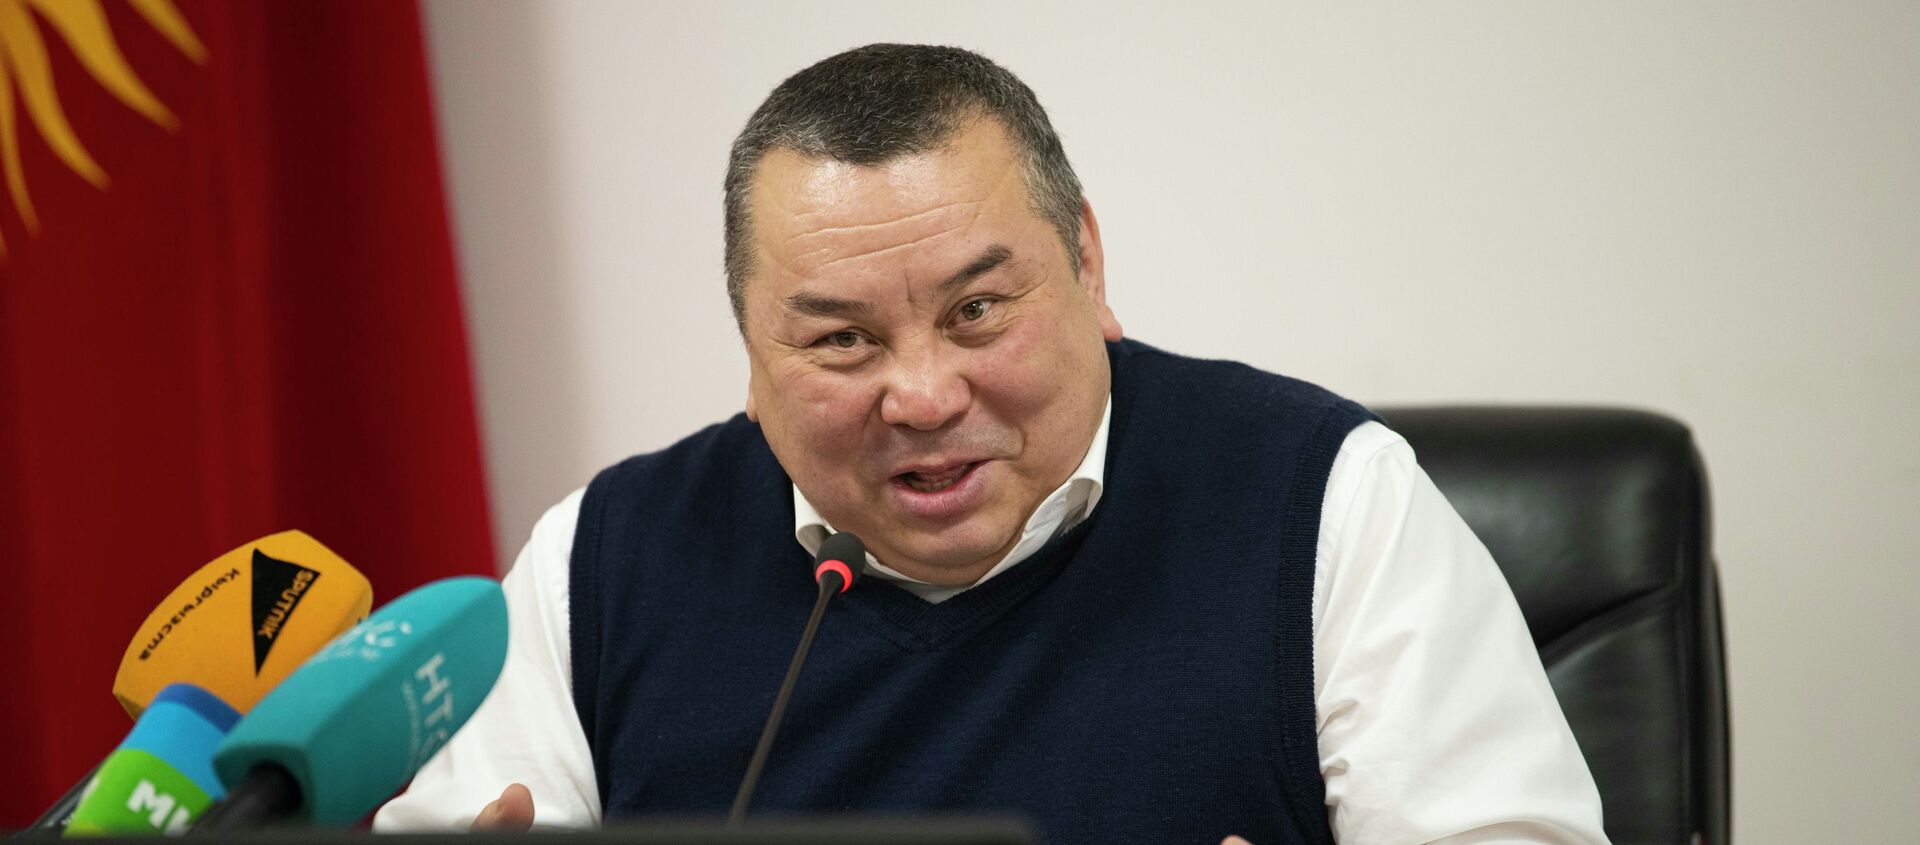 Оставивший должность исполняющего обязанности мэра Бишкека Балбак Тулобаев во время пресс-конференции. 09 февраля 2021 года - Sputnik Кыргызстан, 1920, 09.02.2021